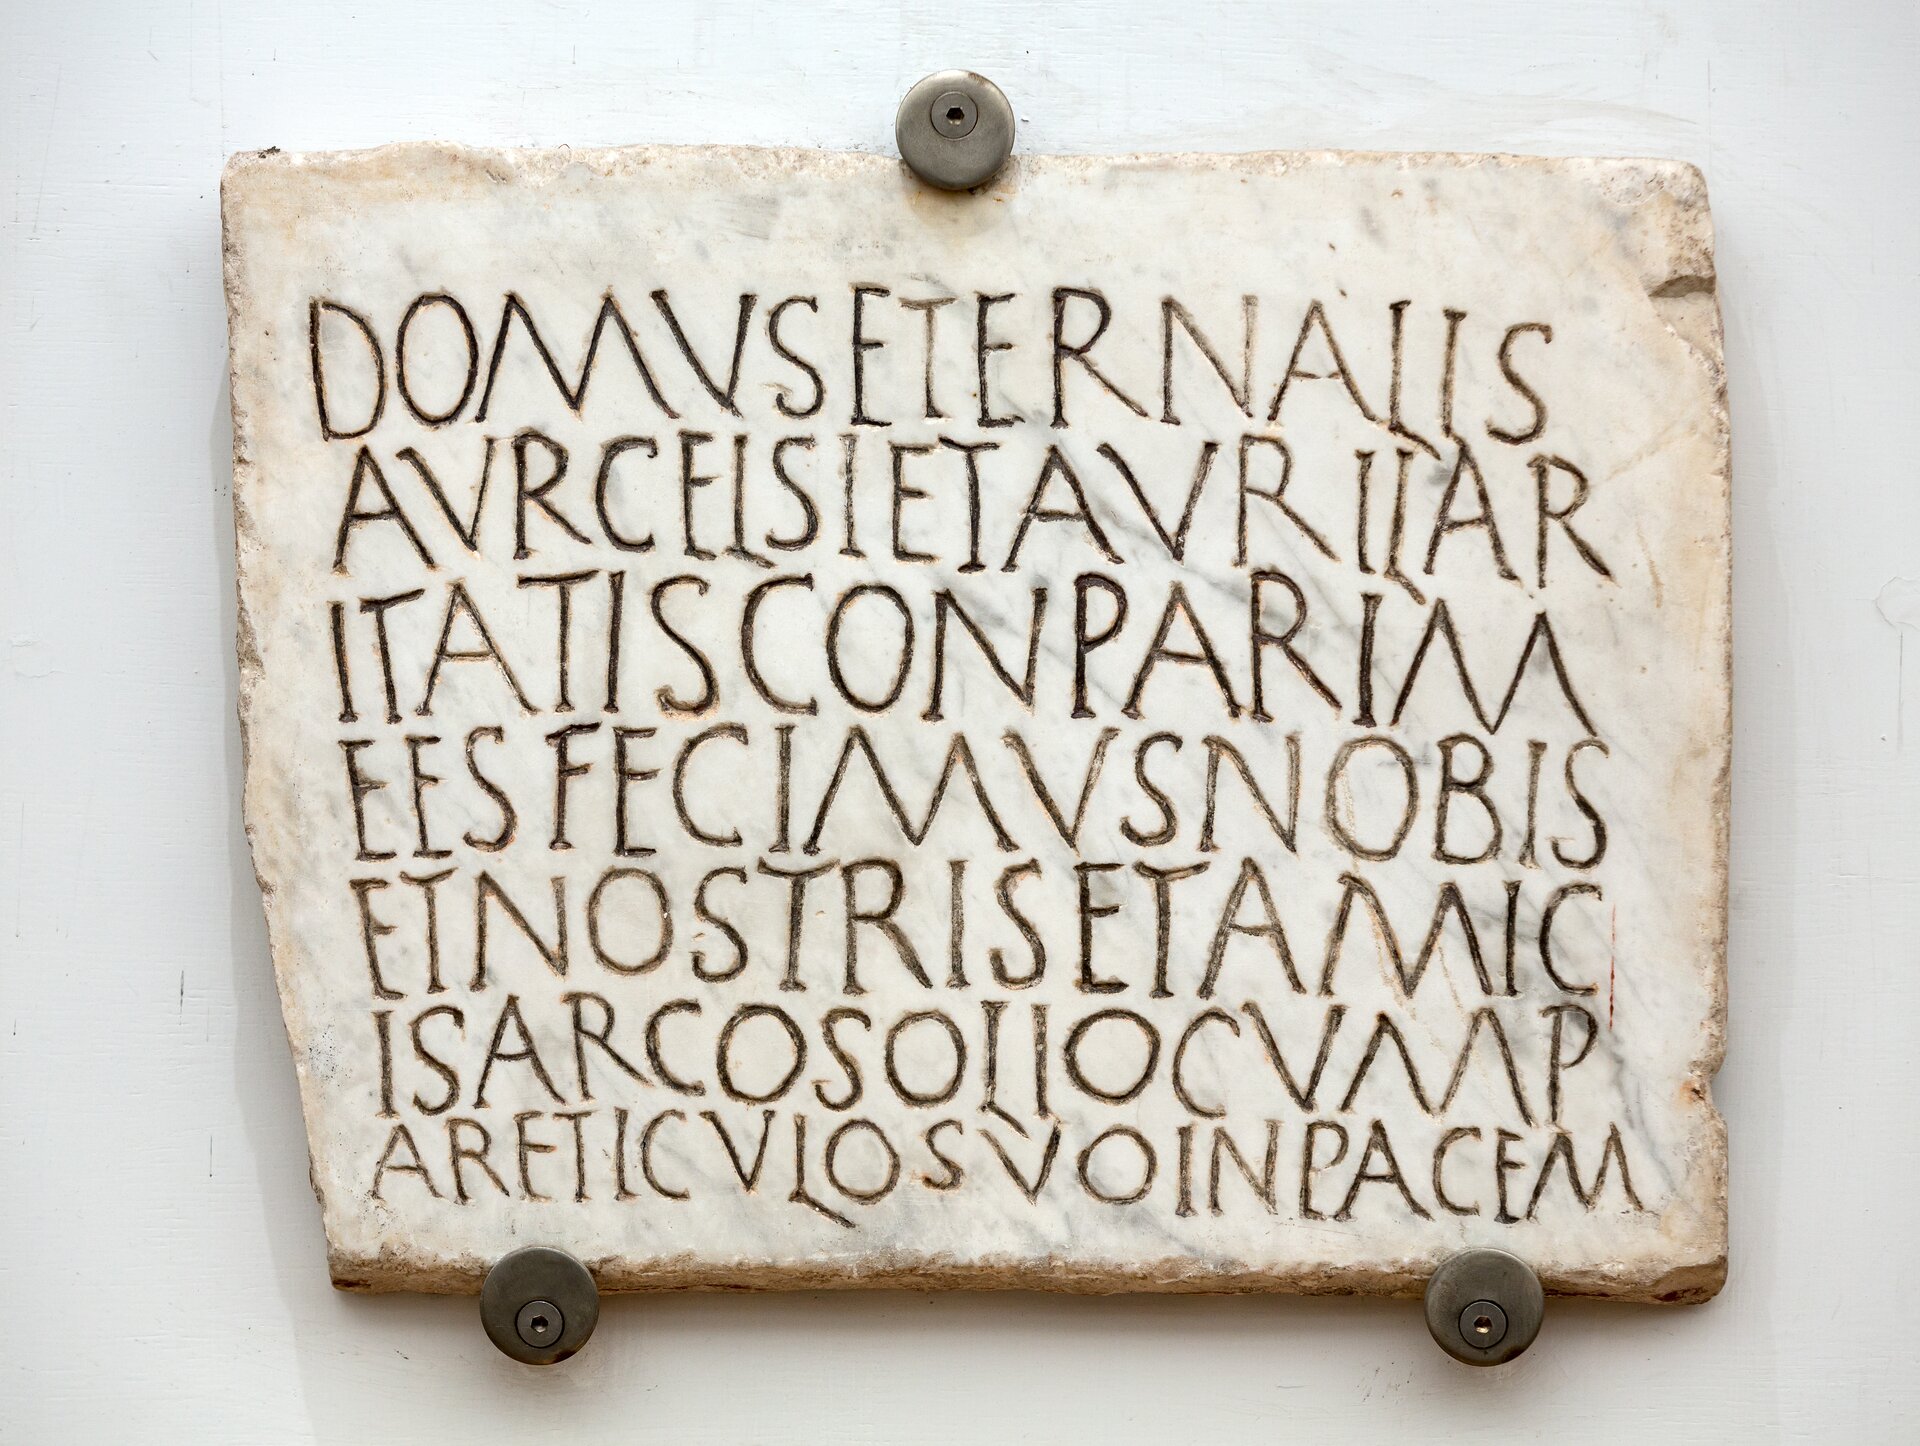 Ilustracja przedstawia płytę nagrobną wykonaną z białego marmuru. Znajdująca się na niej inskrypcja w języku łacińskim jest pisana bez przerw między wyrazami. Litery są duże i wyraźne.